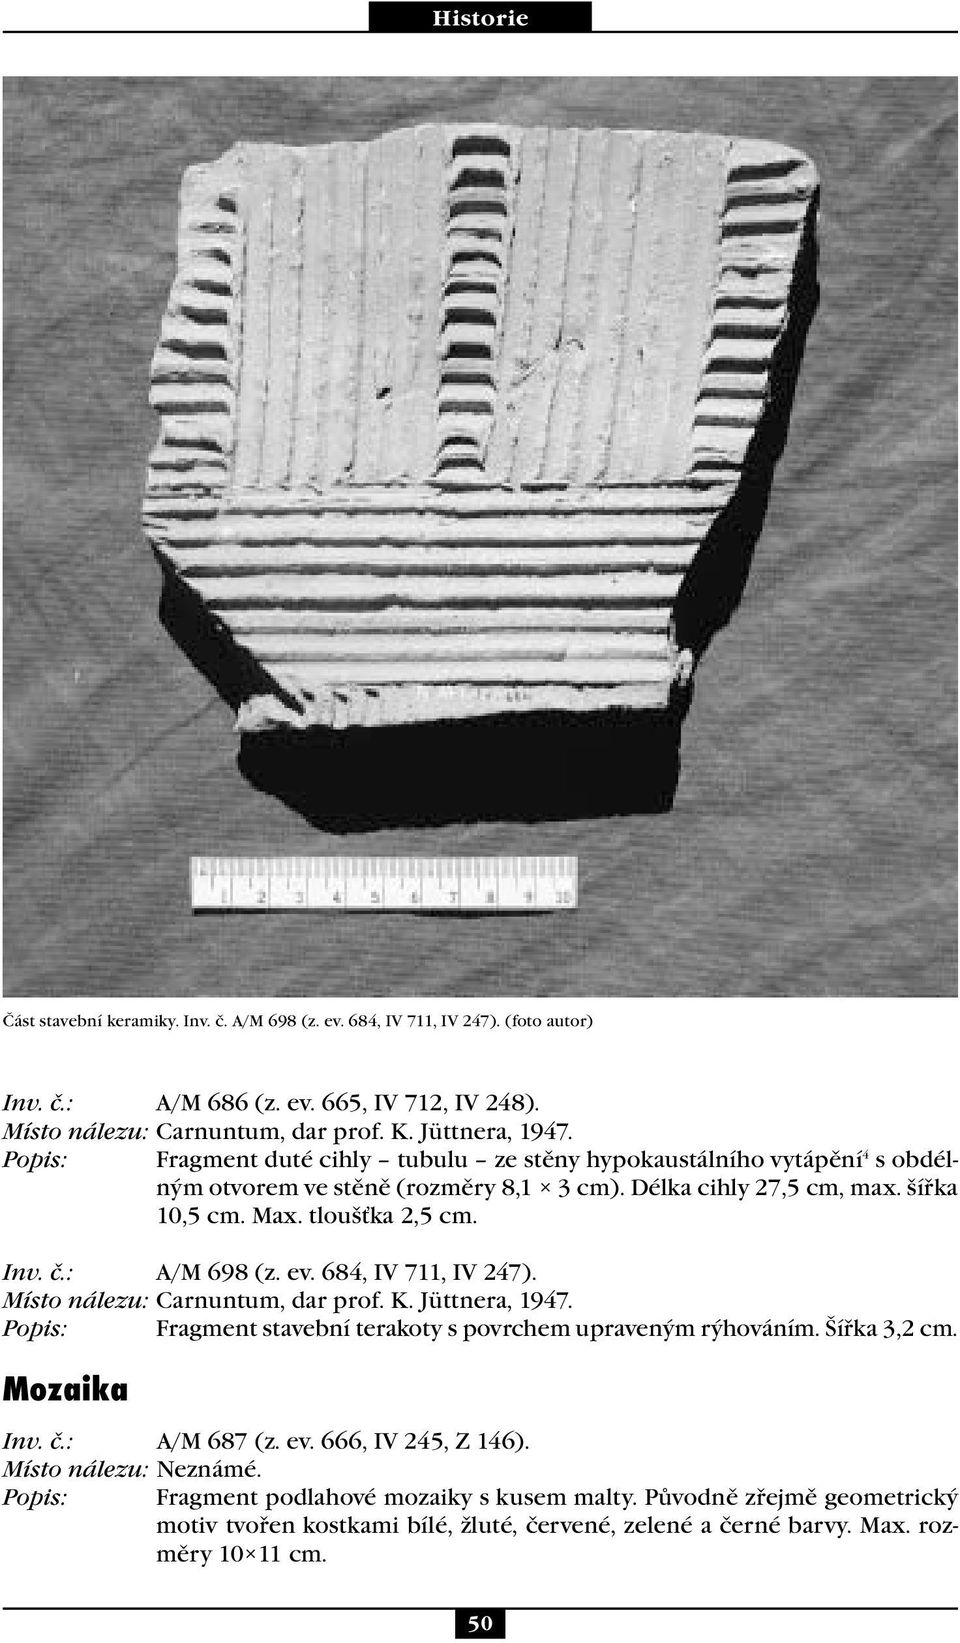 : A/M 698 (z. ev. 684, IV 711, IV 247). Místo nálezu: Carnuntum, dar prof. K. Jüttnera, 1947. Popis: Fragment stavební terakoty s povrchem upraveným rýhováním. Šířka 3,2 cm. Mozaika Inv. č.